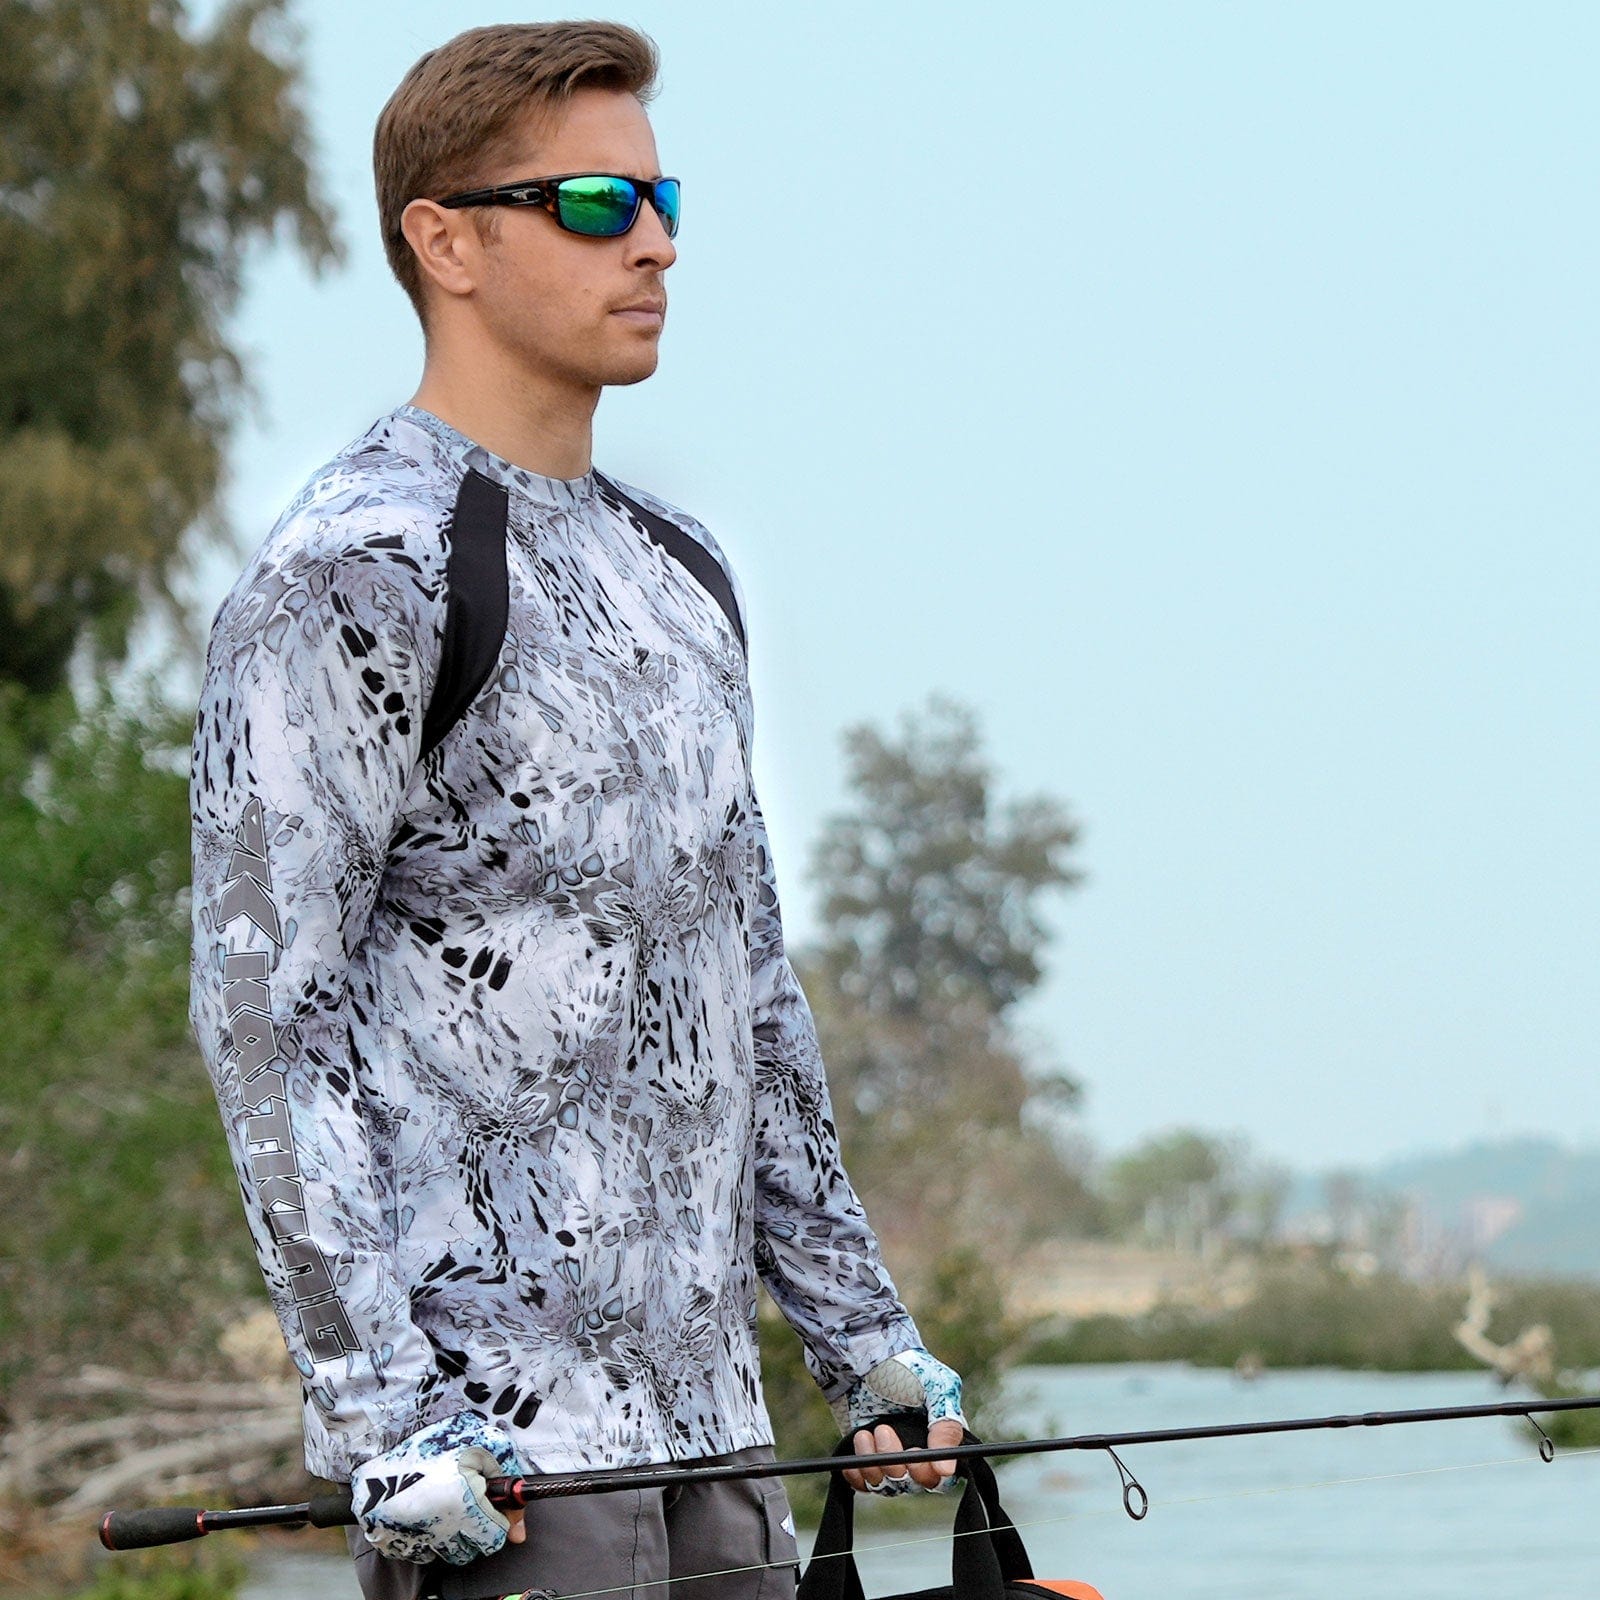 KastKing Men's Long Sleeve Fishing Shirt (With Neck Gaiter)